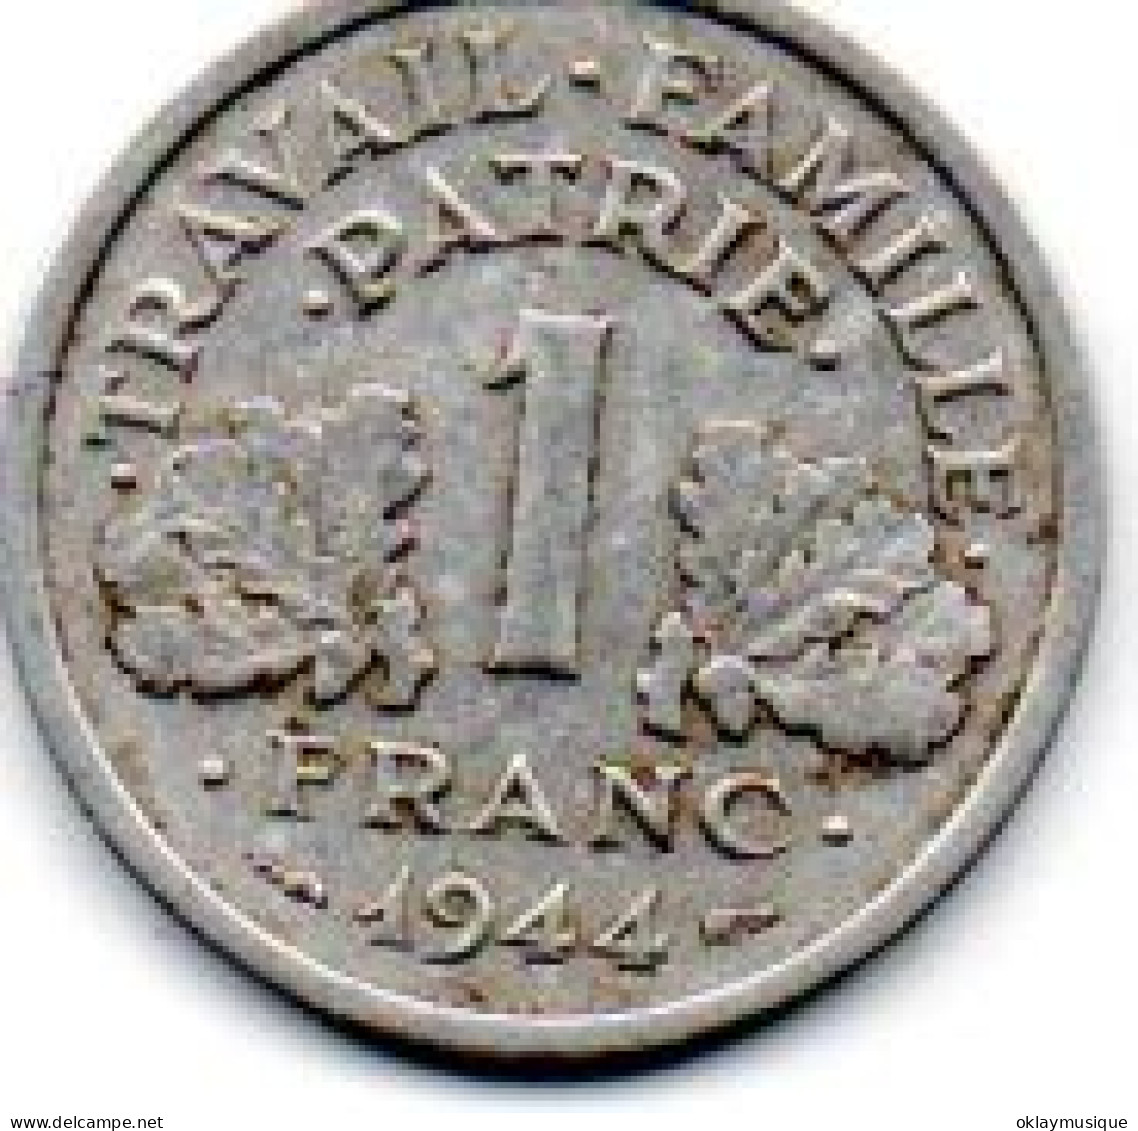 1 Franc Bazor 1944 - 1 Franc